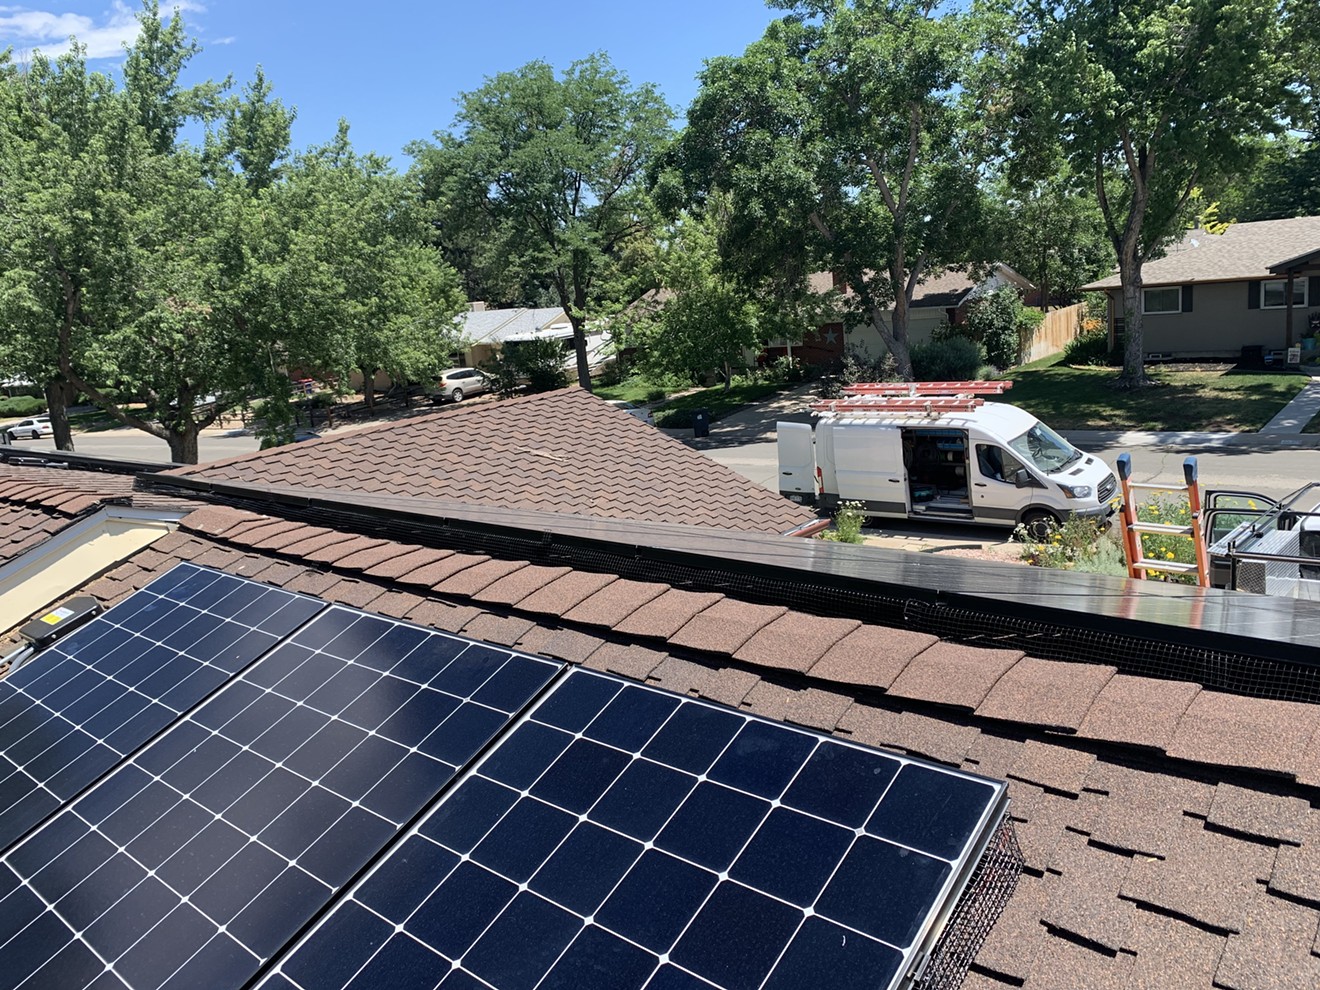 Home solar permitting just got easier in Denver.